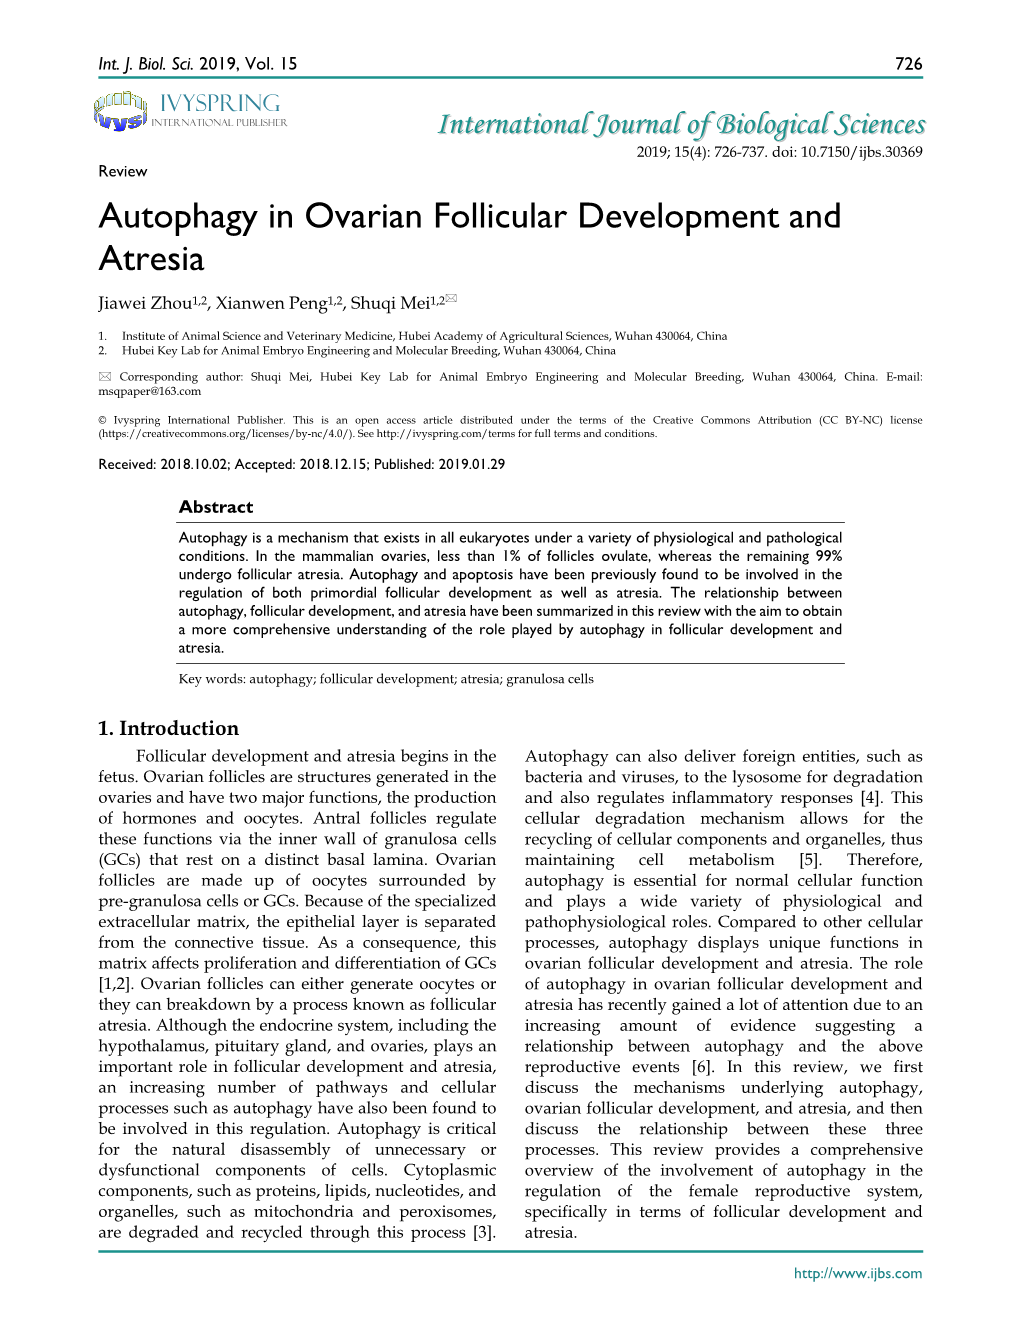 Autophagy in Ovarian Follicular Development and Atresia Jiawei Zhou1,2, Xianwen Peng1,2, Shuqi Mei1,2